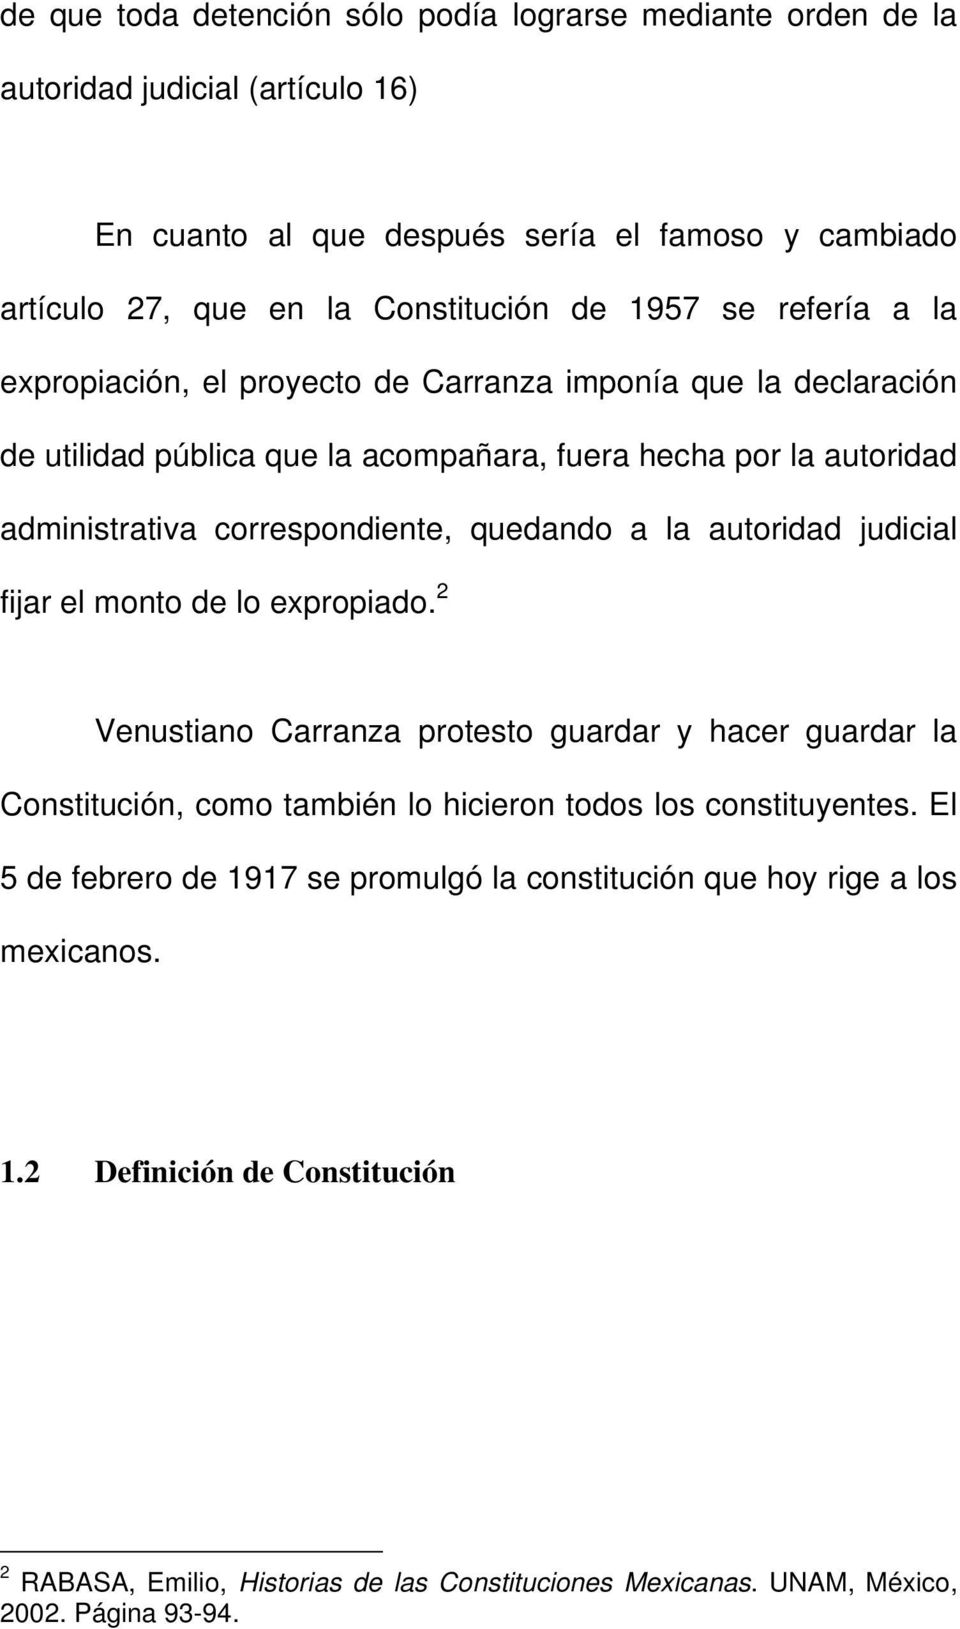 la autoridad judicial fijar el monto de lo expropiado. 2 Venustiano Carranza protesto guardar y hacer guardar la Constitución, como también lo hicieron todos los constituyentes.